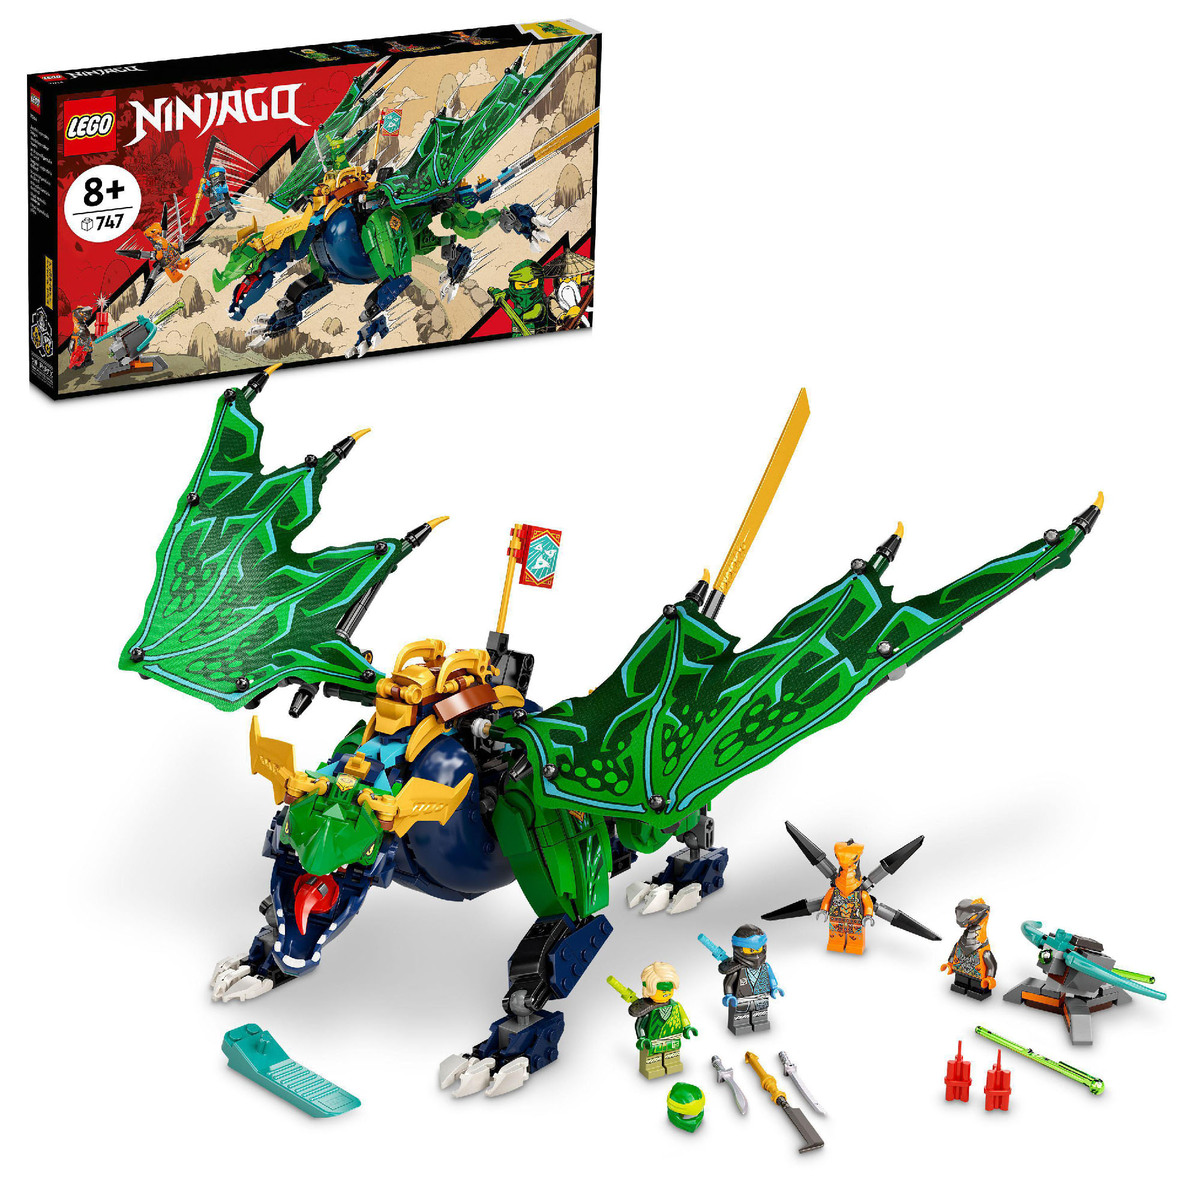 Lego Lloyd Legendary Dragon 71766